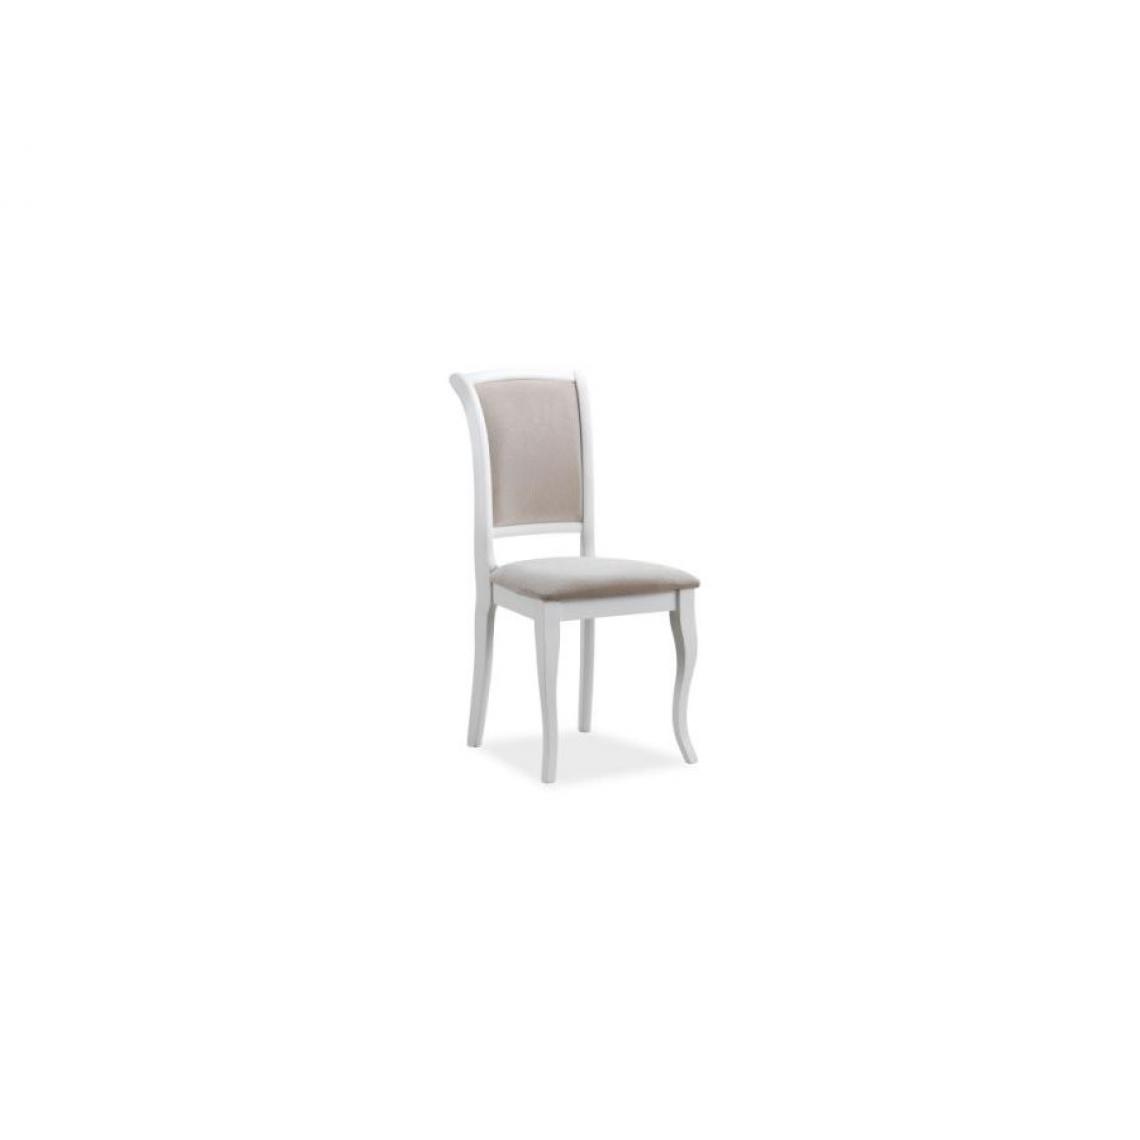 Hucoco - MINIR | Belle chaise style classique salon/salle à manger | Dimensions 96x45x42 cm | Tissu haute qualité | Cadre robuste en bois - Blanc - Chaises